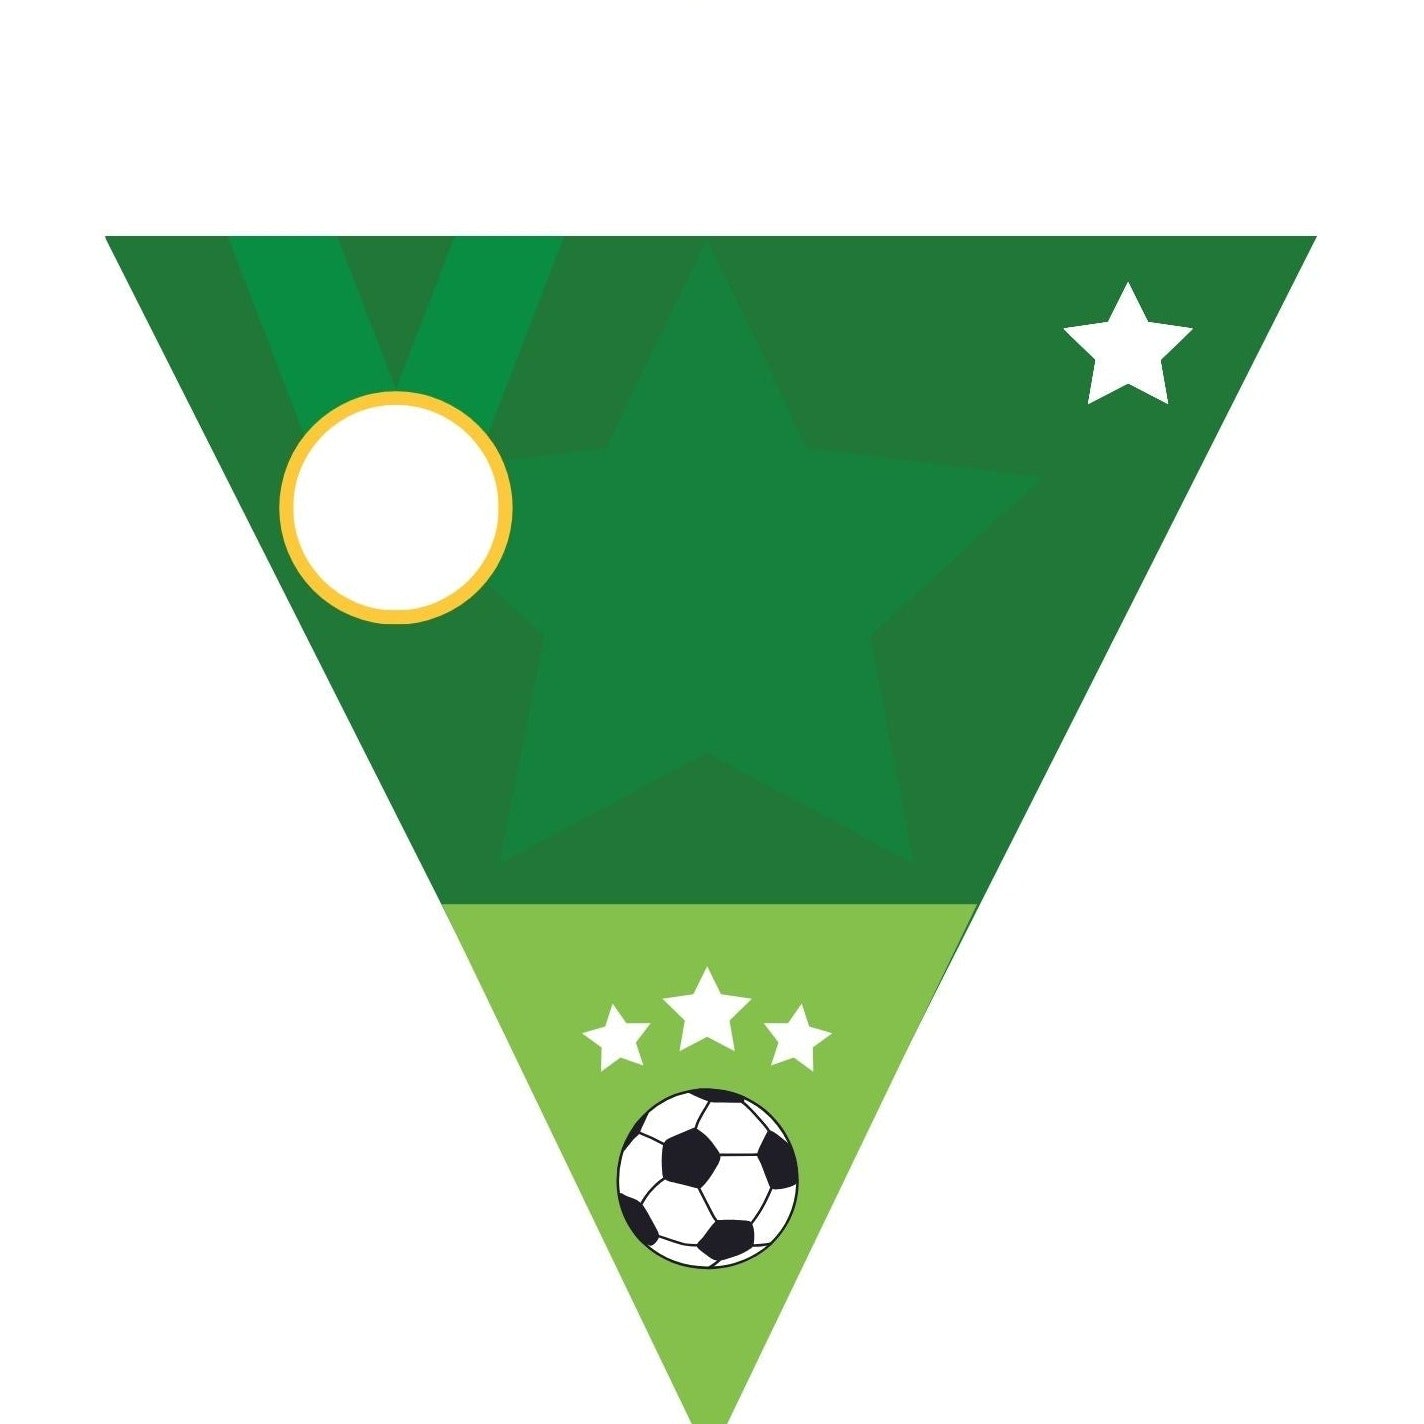 Banderines personalizados con escudos de fútbol